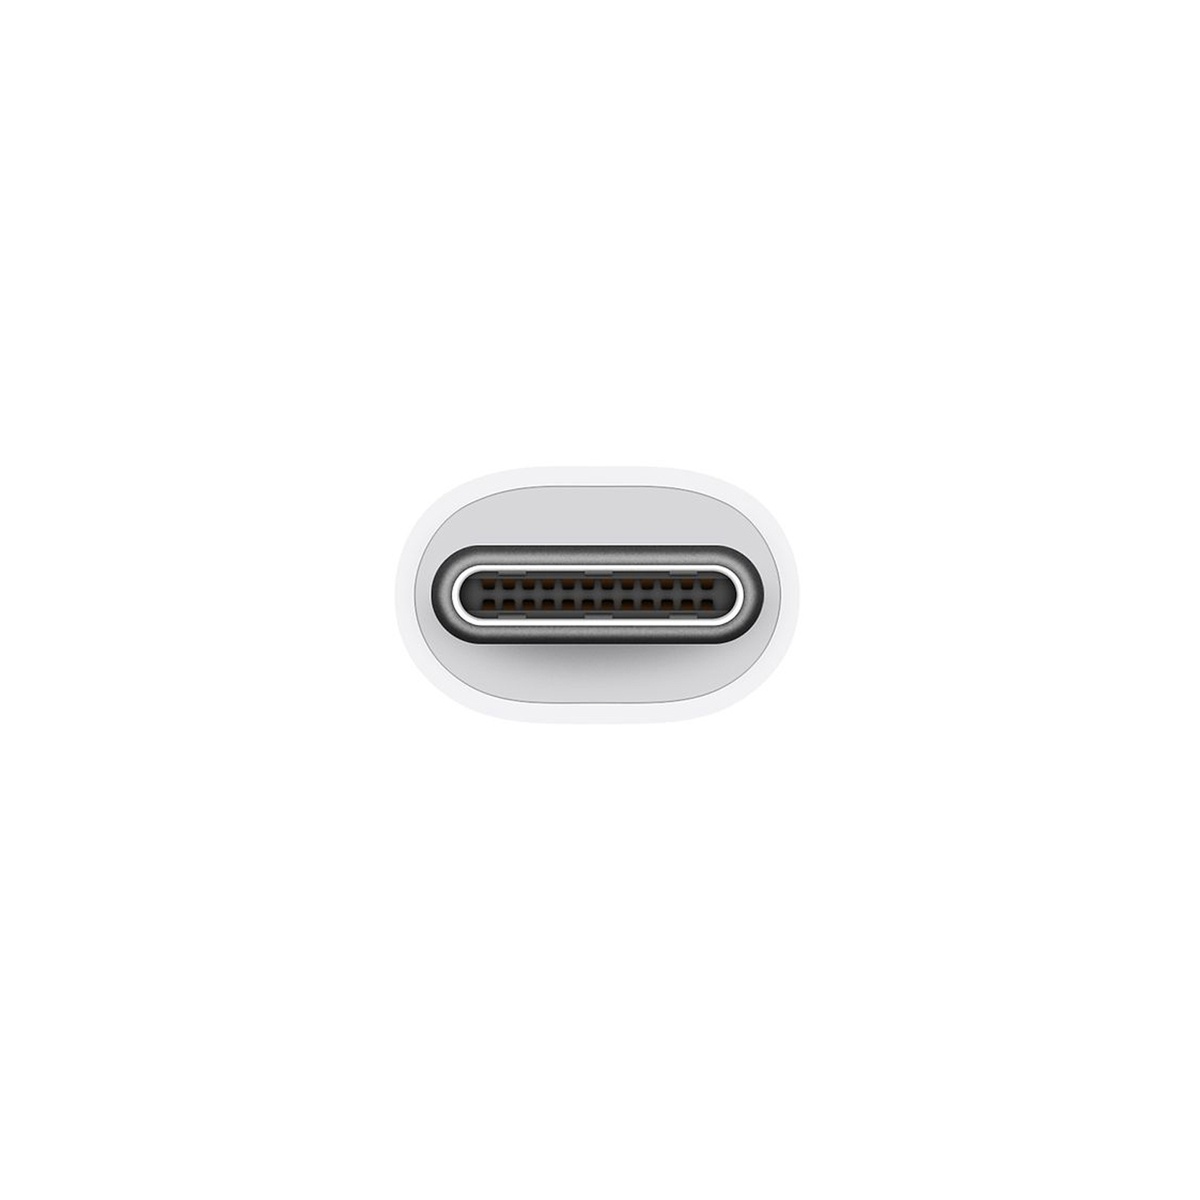 Кабель Apple USB-C Digital AV Multiport Adapter MJ1K2